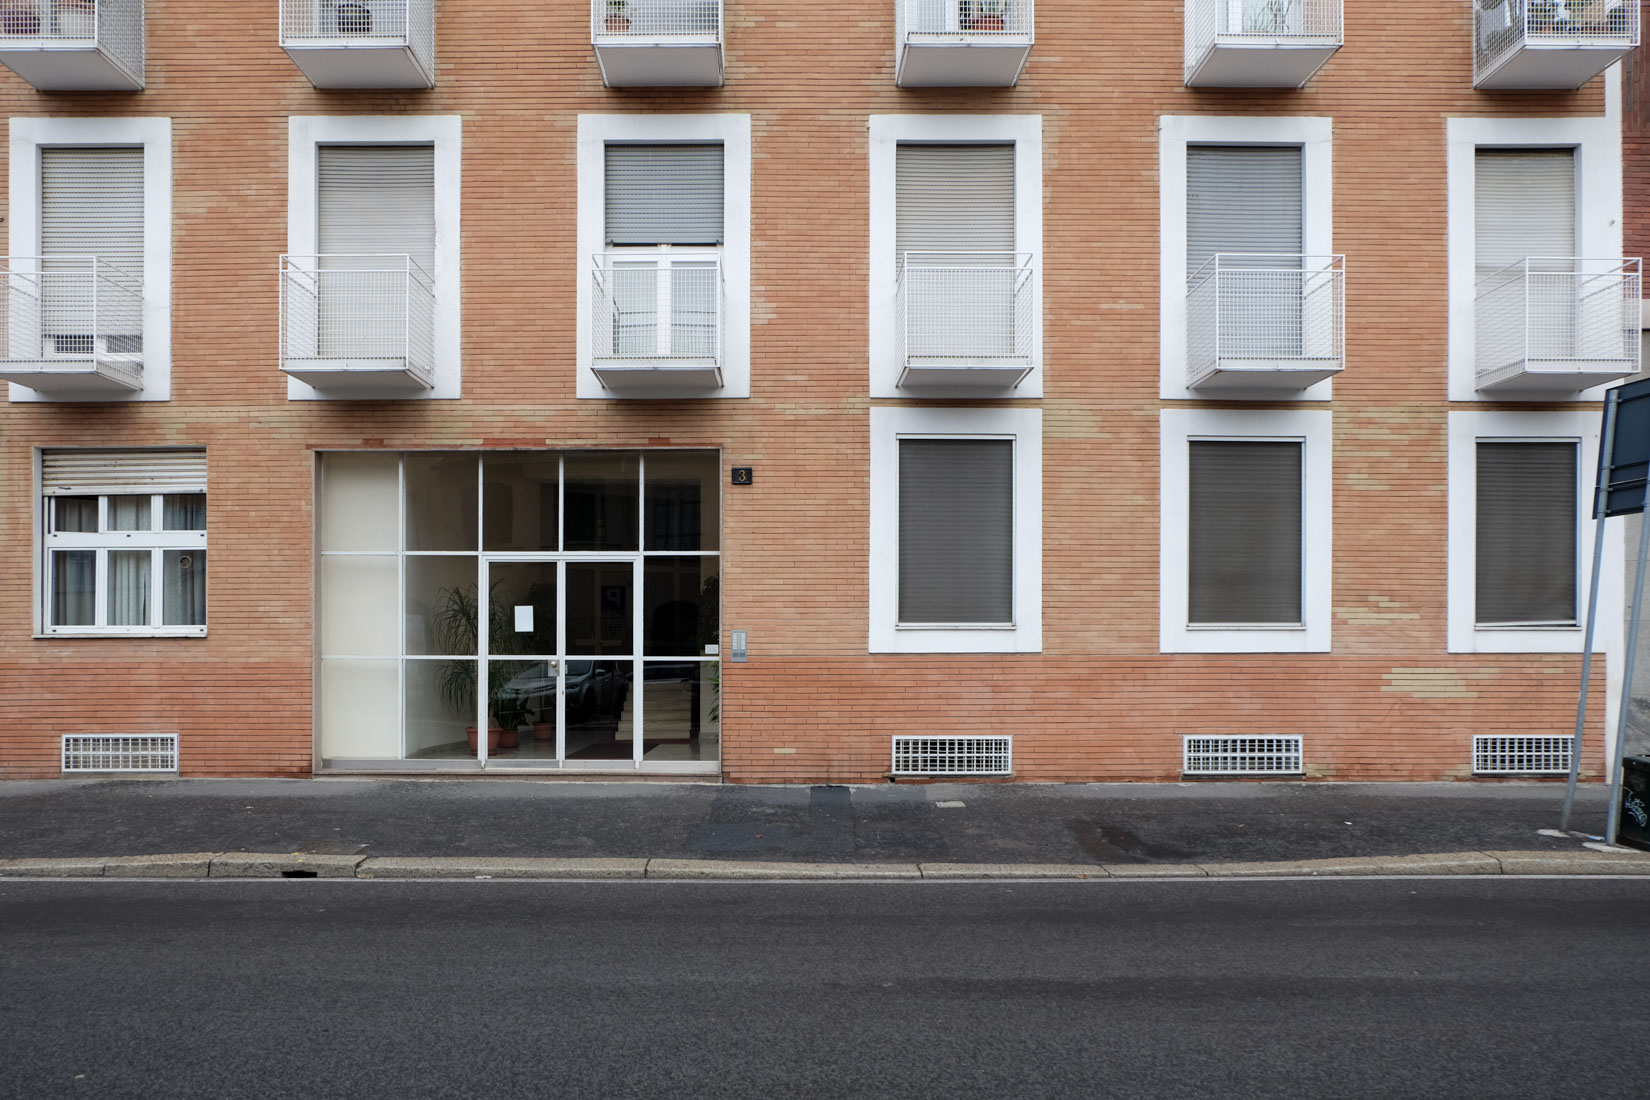 Asnago Vender - Apartment Building Via Col Moschin, Milano